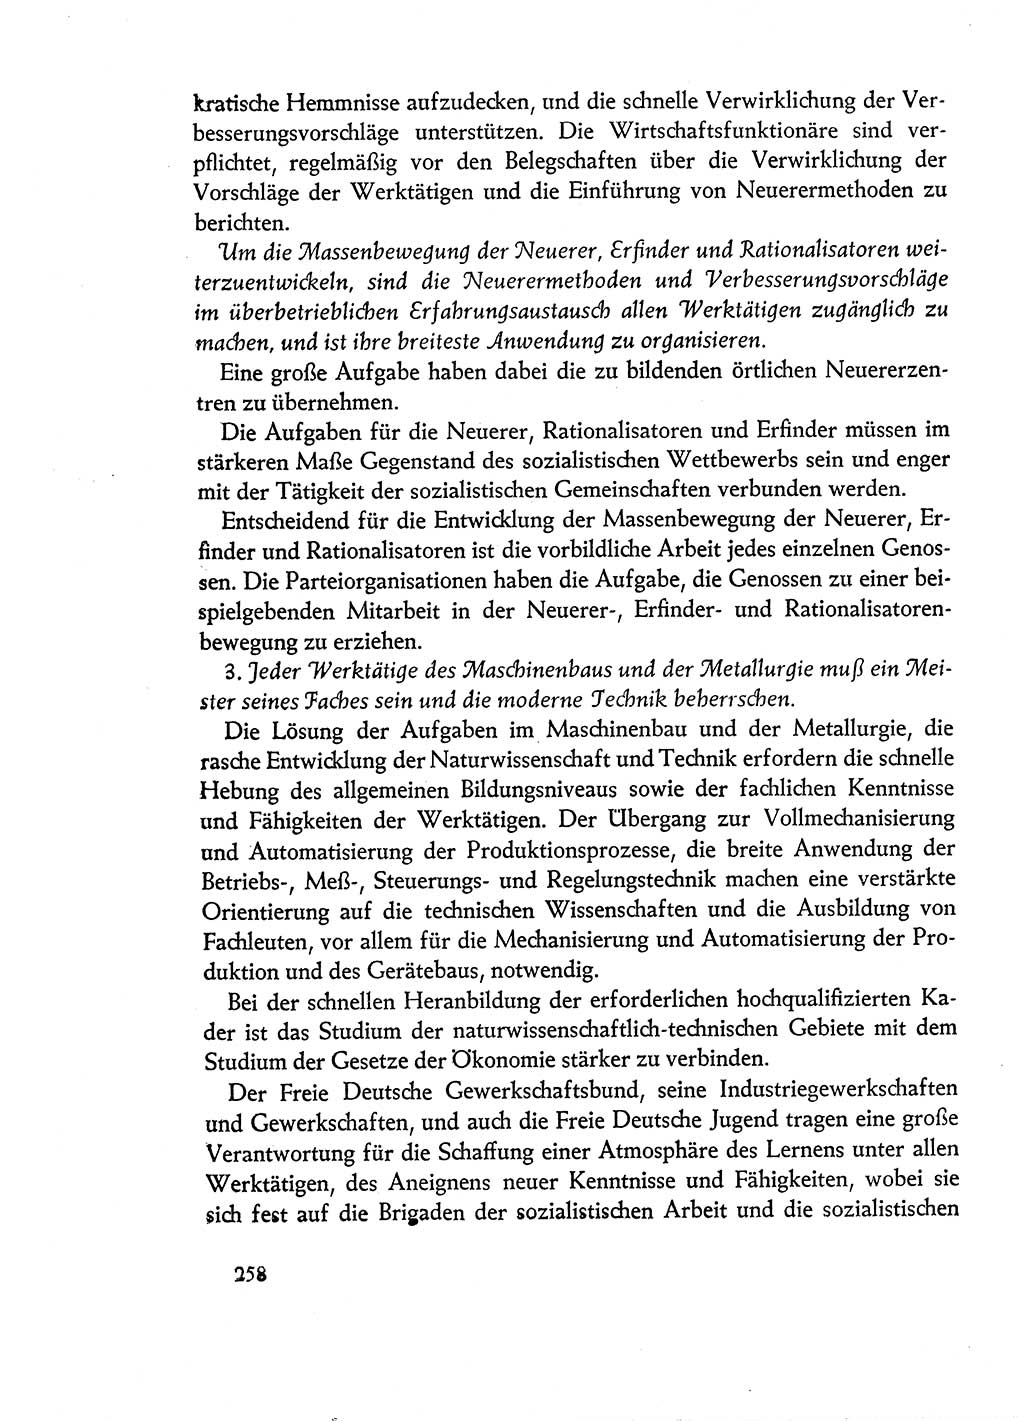 Dokumente der Sozialistischen Einheitspartei Deutschlands (SED) [Deutsche Demokratische Republik (DDR)] 1960-1961, Seite 258 (Dok. SED DDR 1960-1961, S. 258)